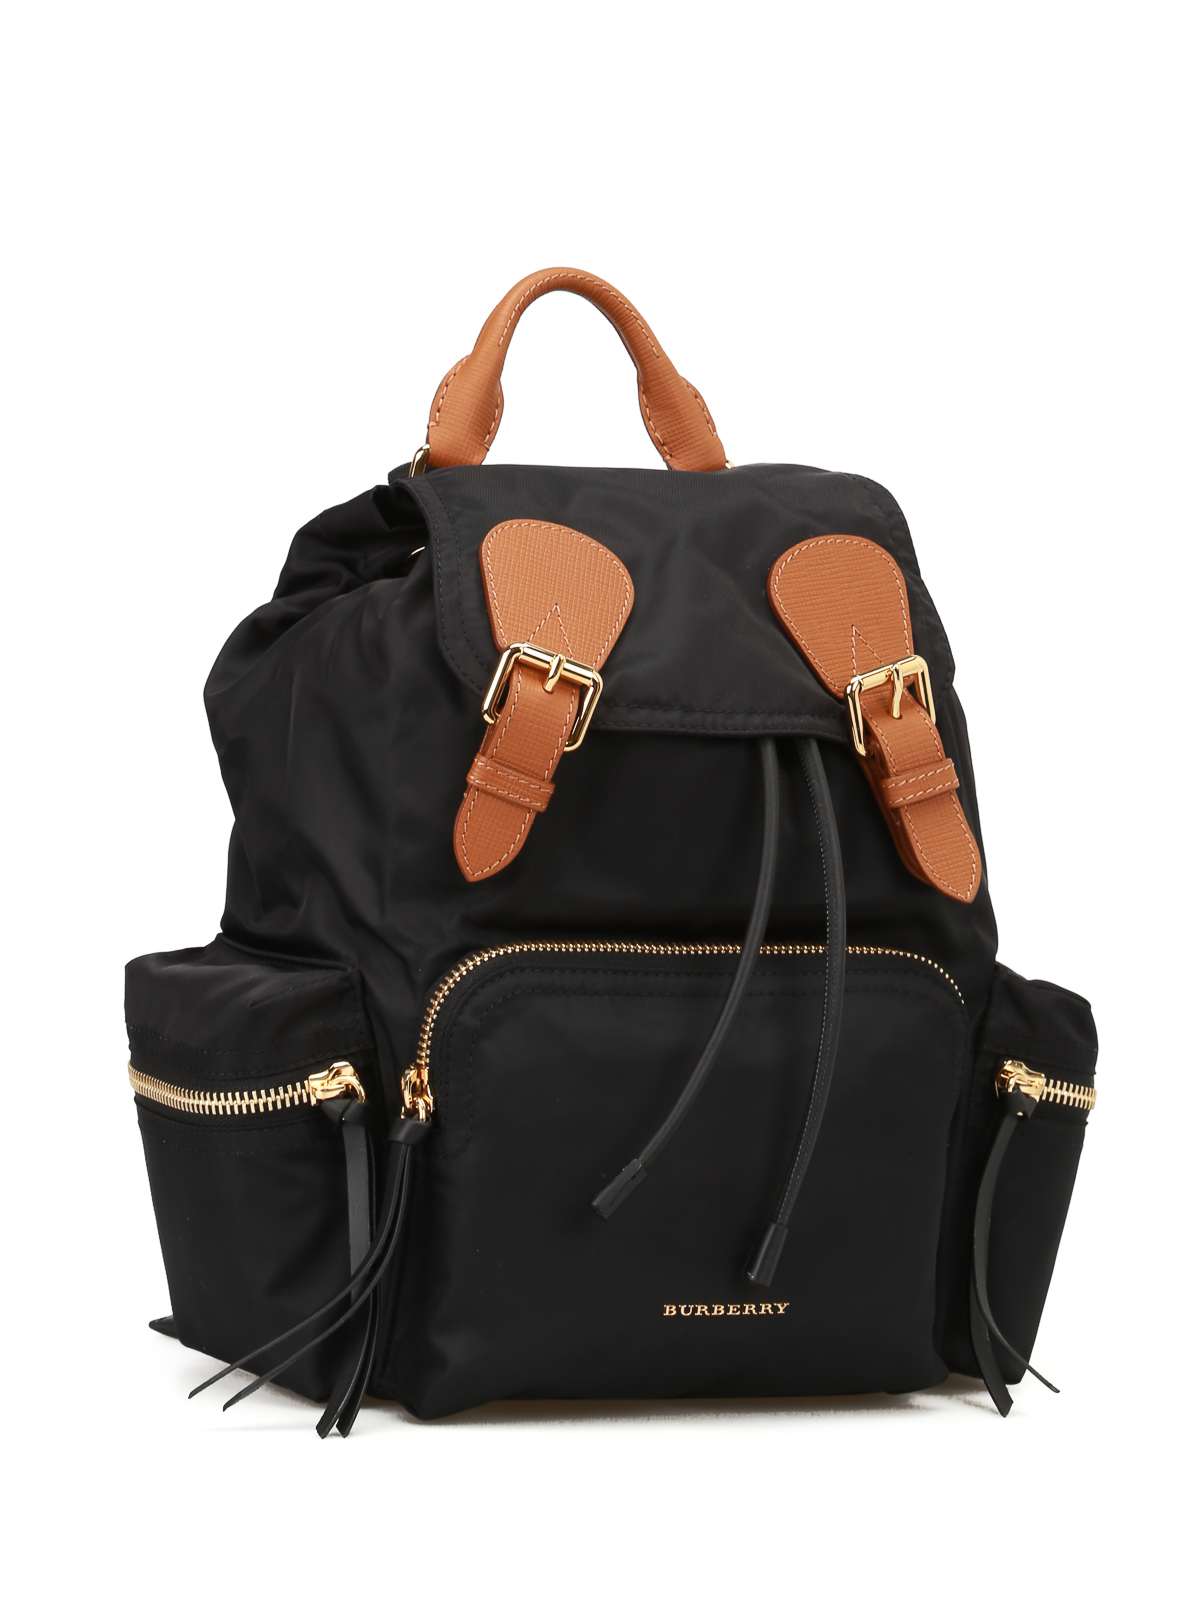 Backpacks Burberry - The Rucksack nylon medium backpack - 4016622